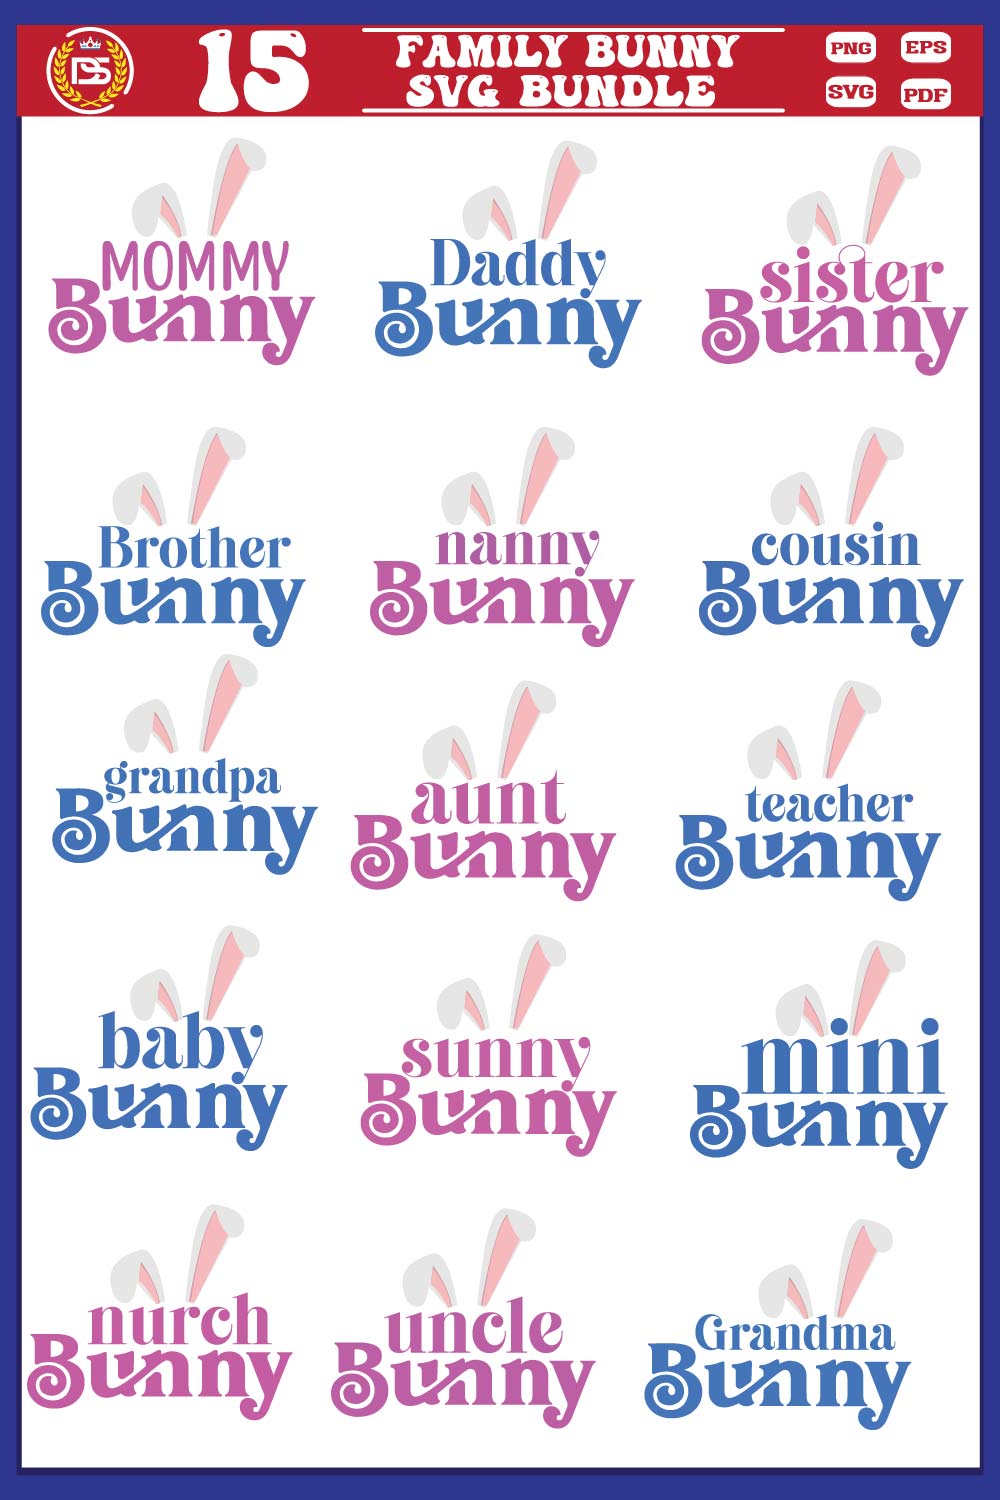 Easter Bunny SVG Bundle pinterest preview image.